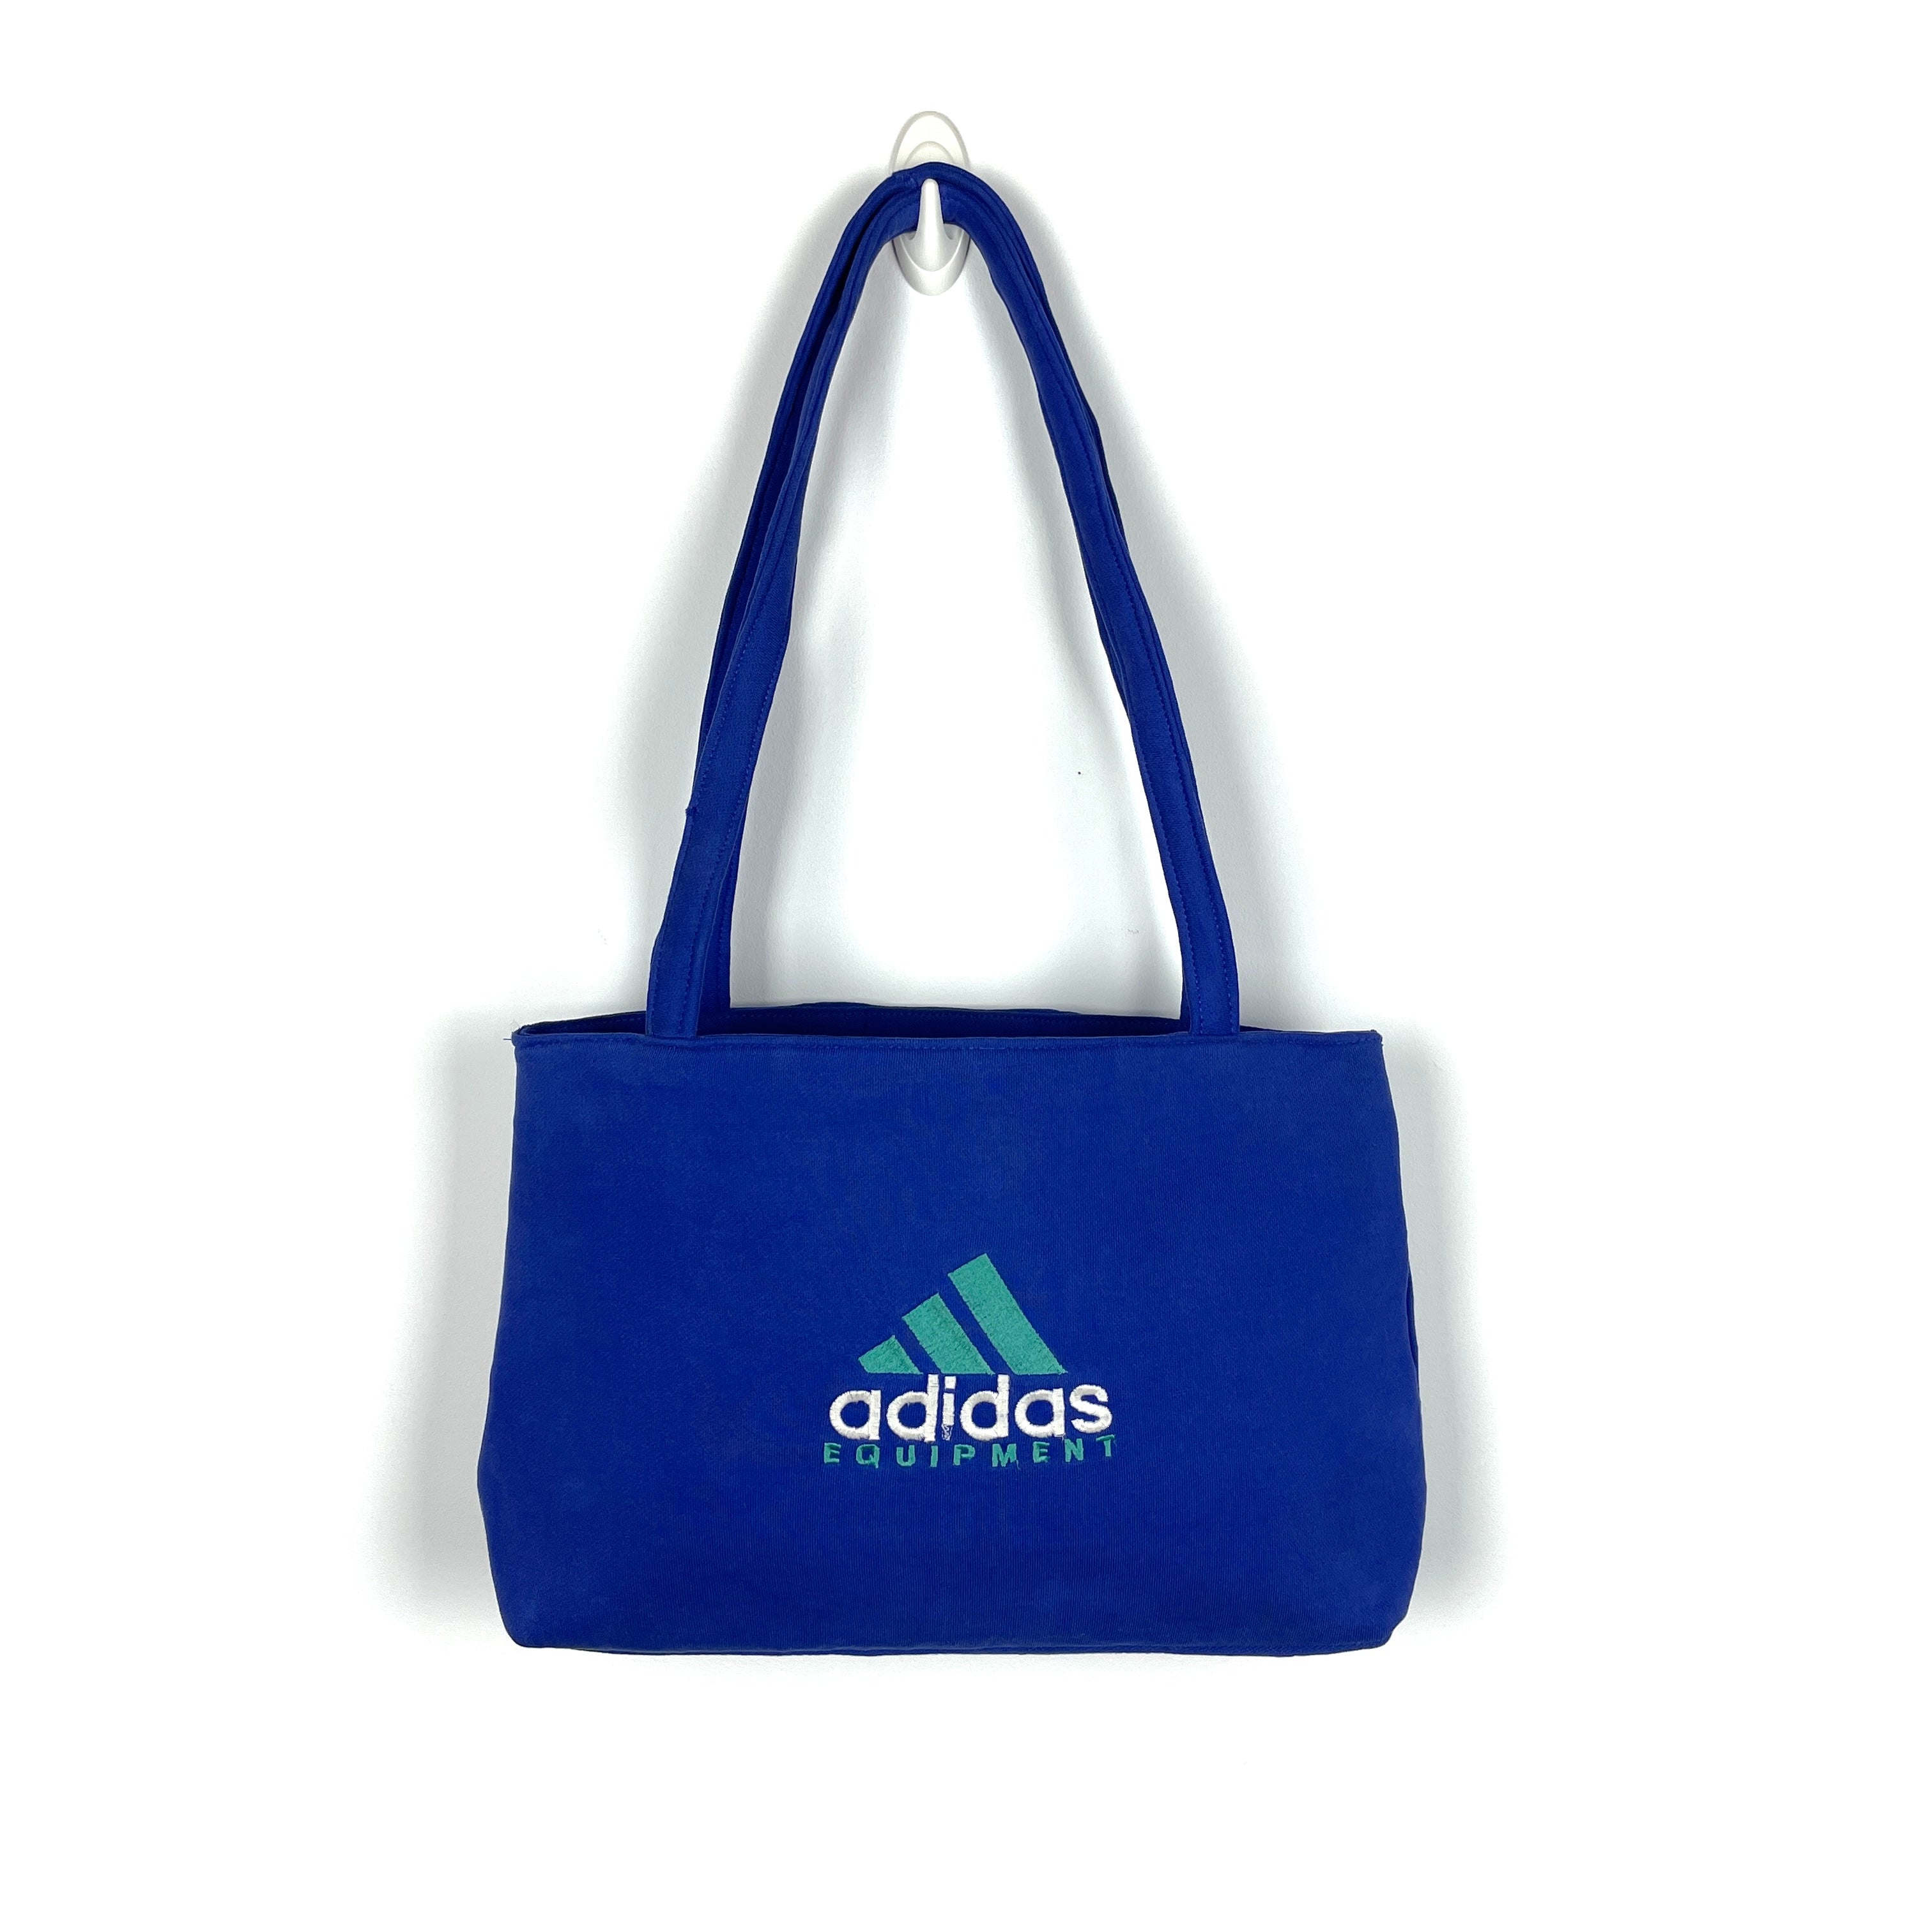 Vibn Studio x Adidas Equipment Tote Bag